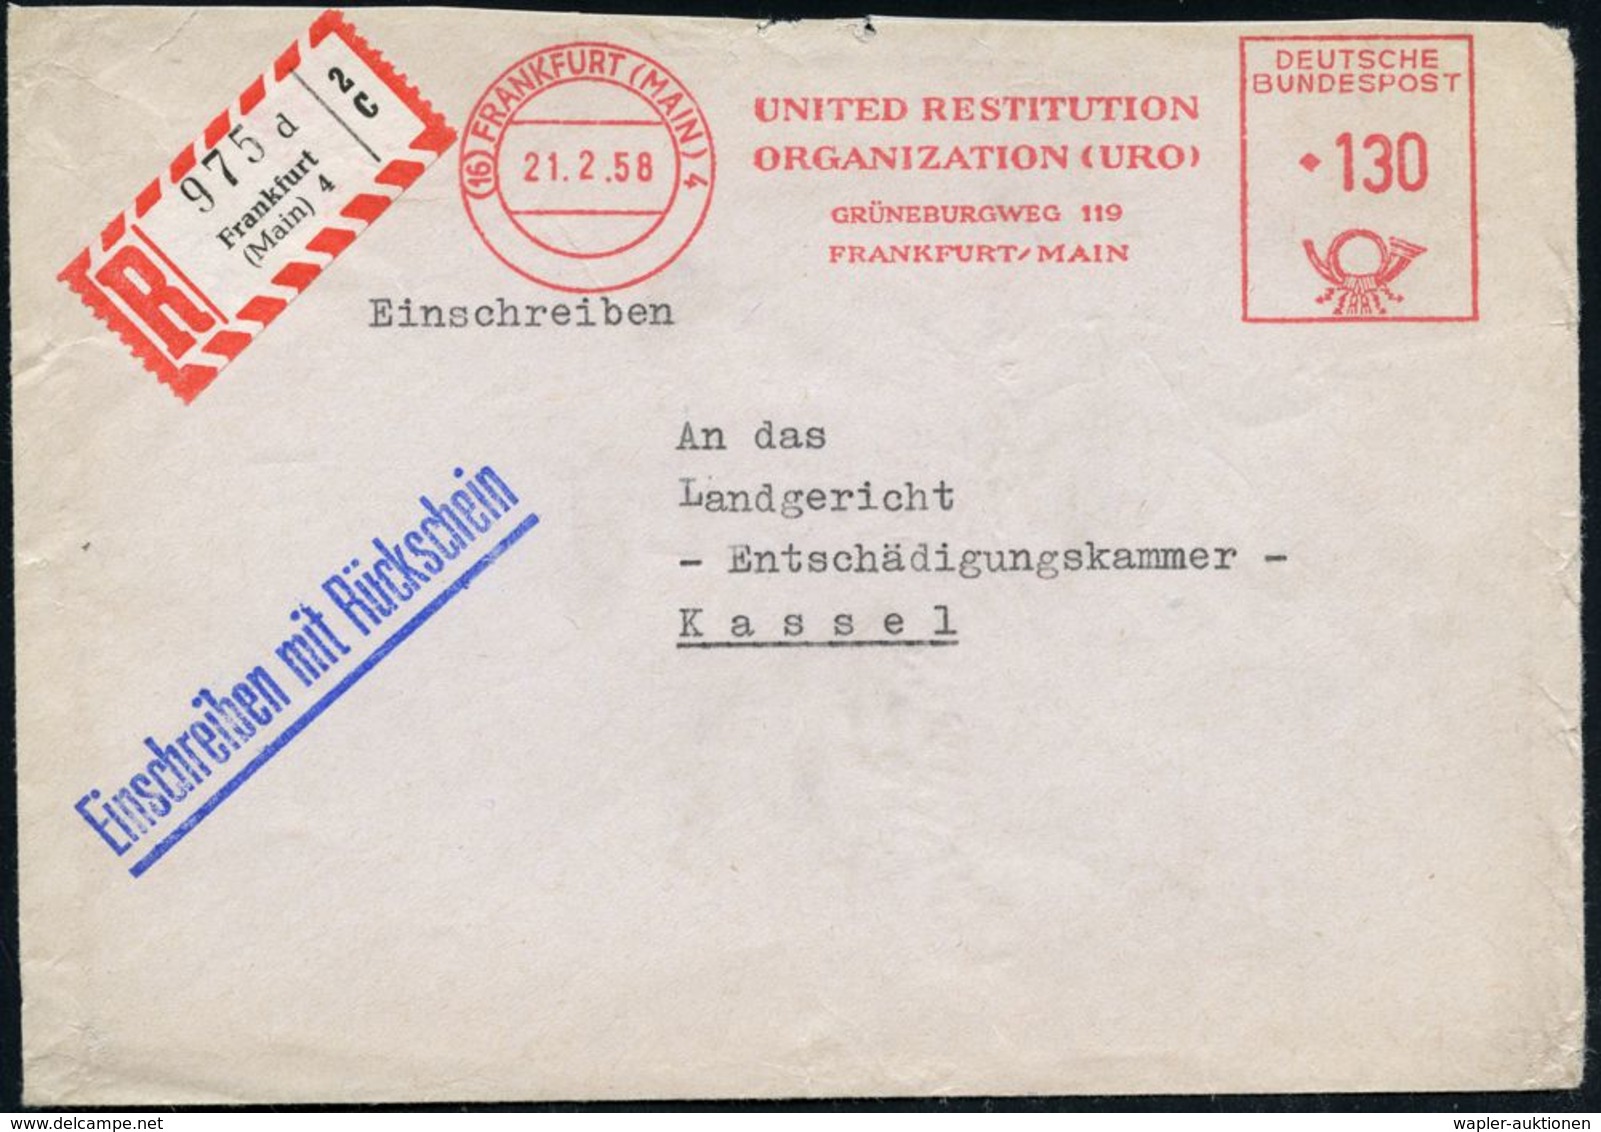 (16) FRANKFURT (MAIN)4/ UNITED RESTITUTION/ ORGANIZATION (URO).. 1958 (21.2.) AFS 130 Pf. + RZ: Frankfurt/(Main) 4/d (ob - Joodse Geloof